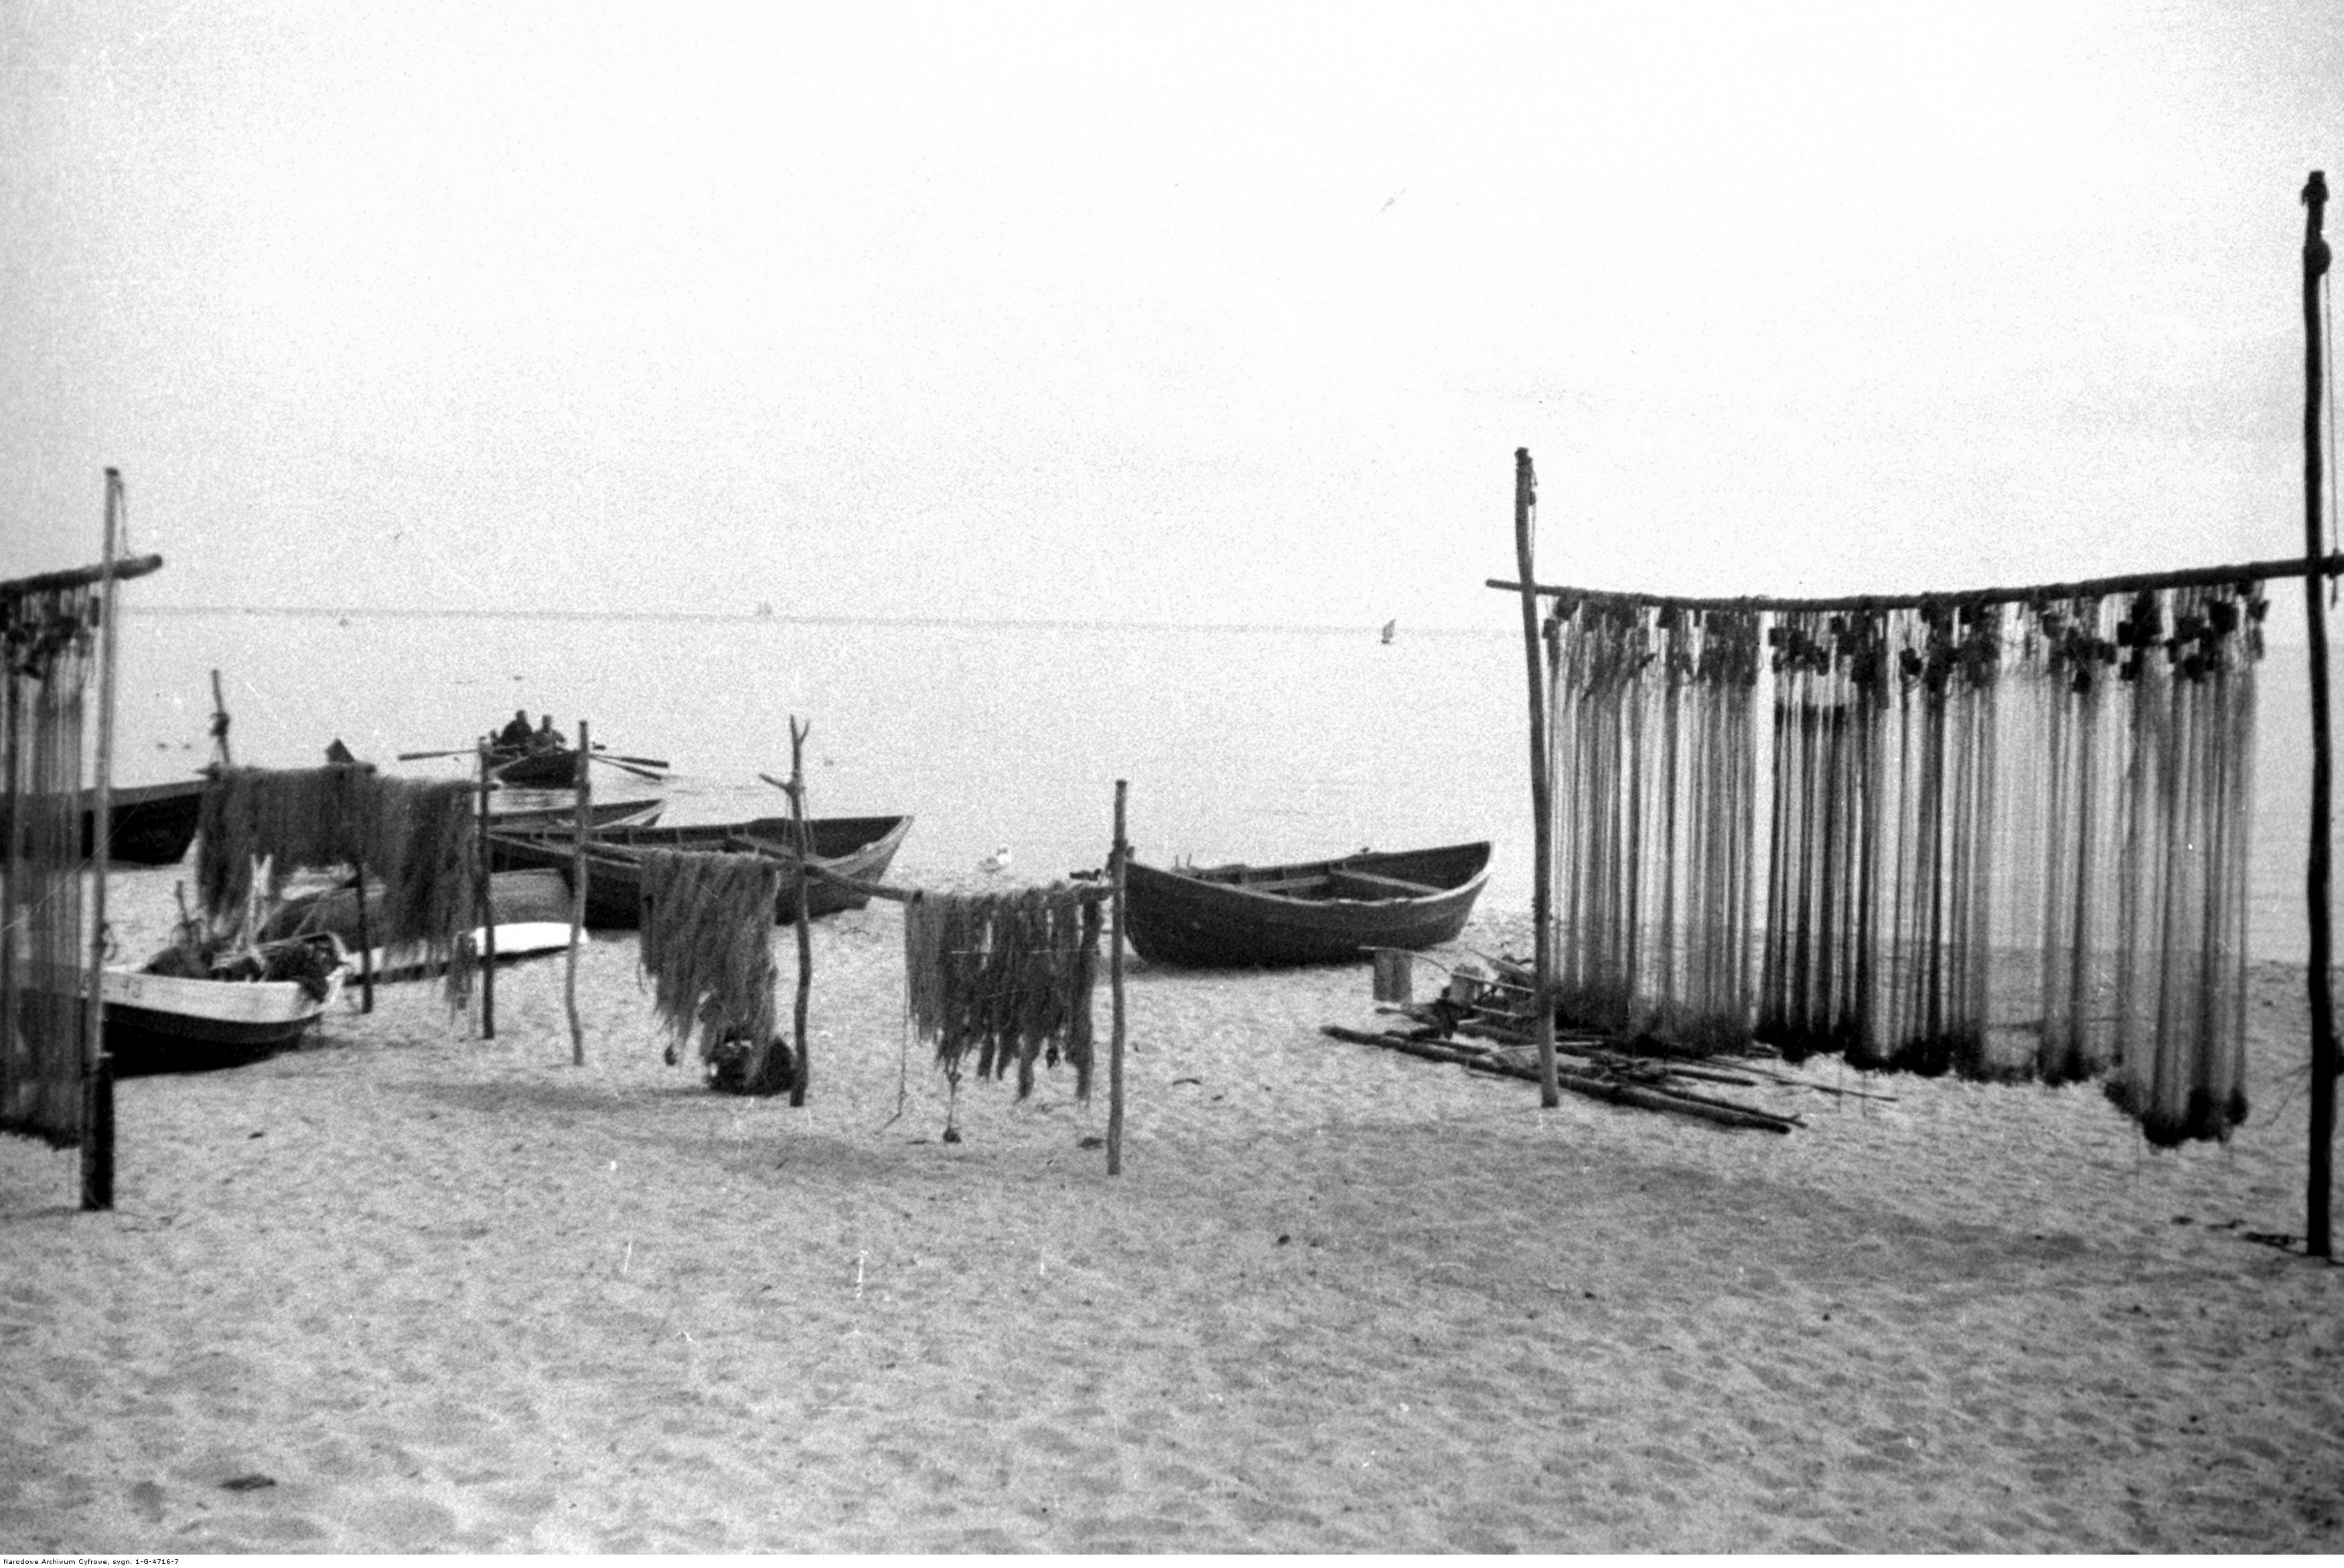 Sieci rybackie rozwieszone na brzegu Zatoki Gdańskiej na plaży